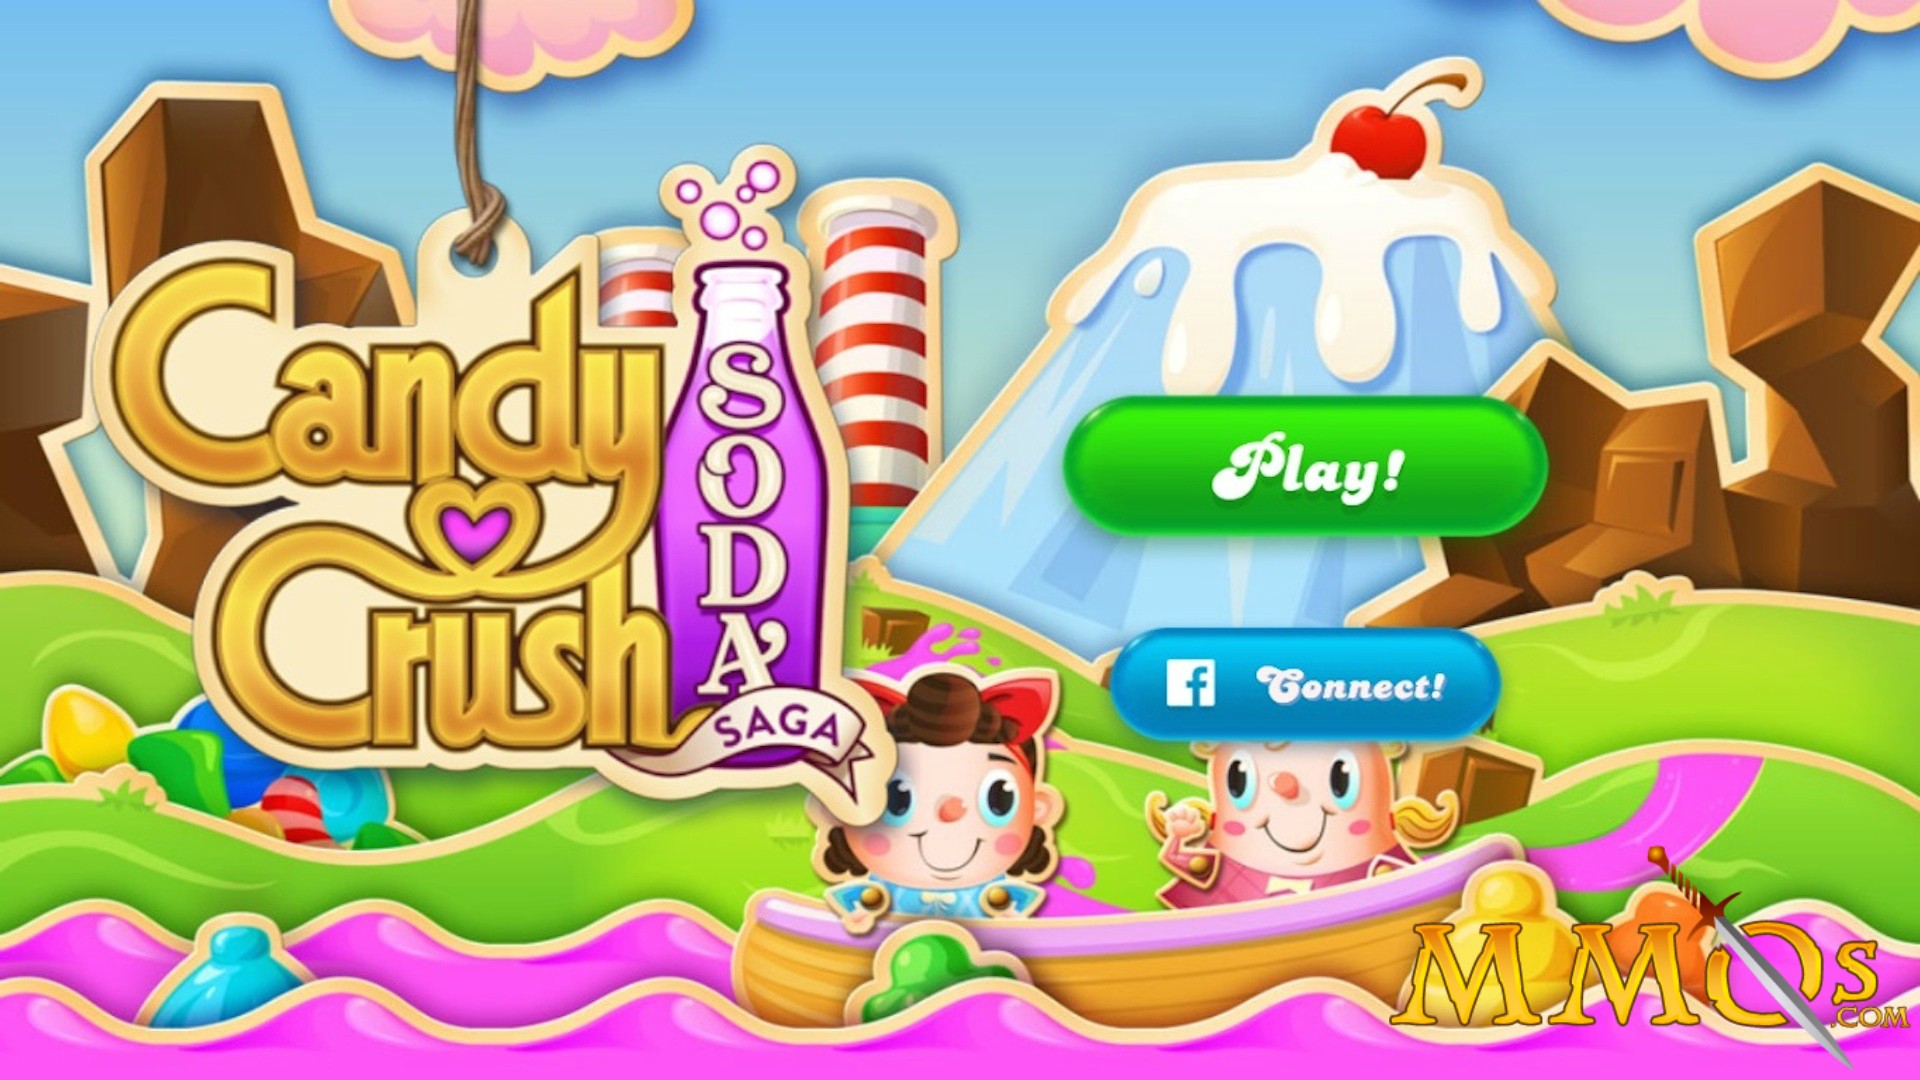 Candy Crush Saga VS Candy Crush Soda Saga Gameplay HD 